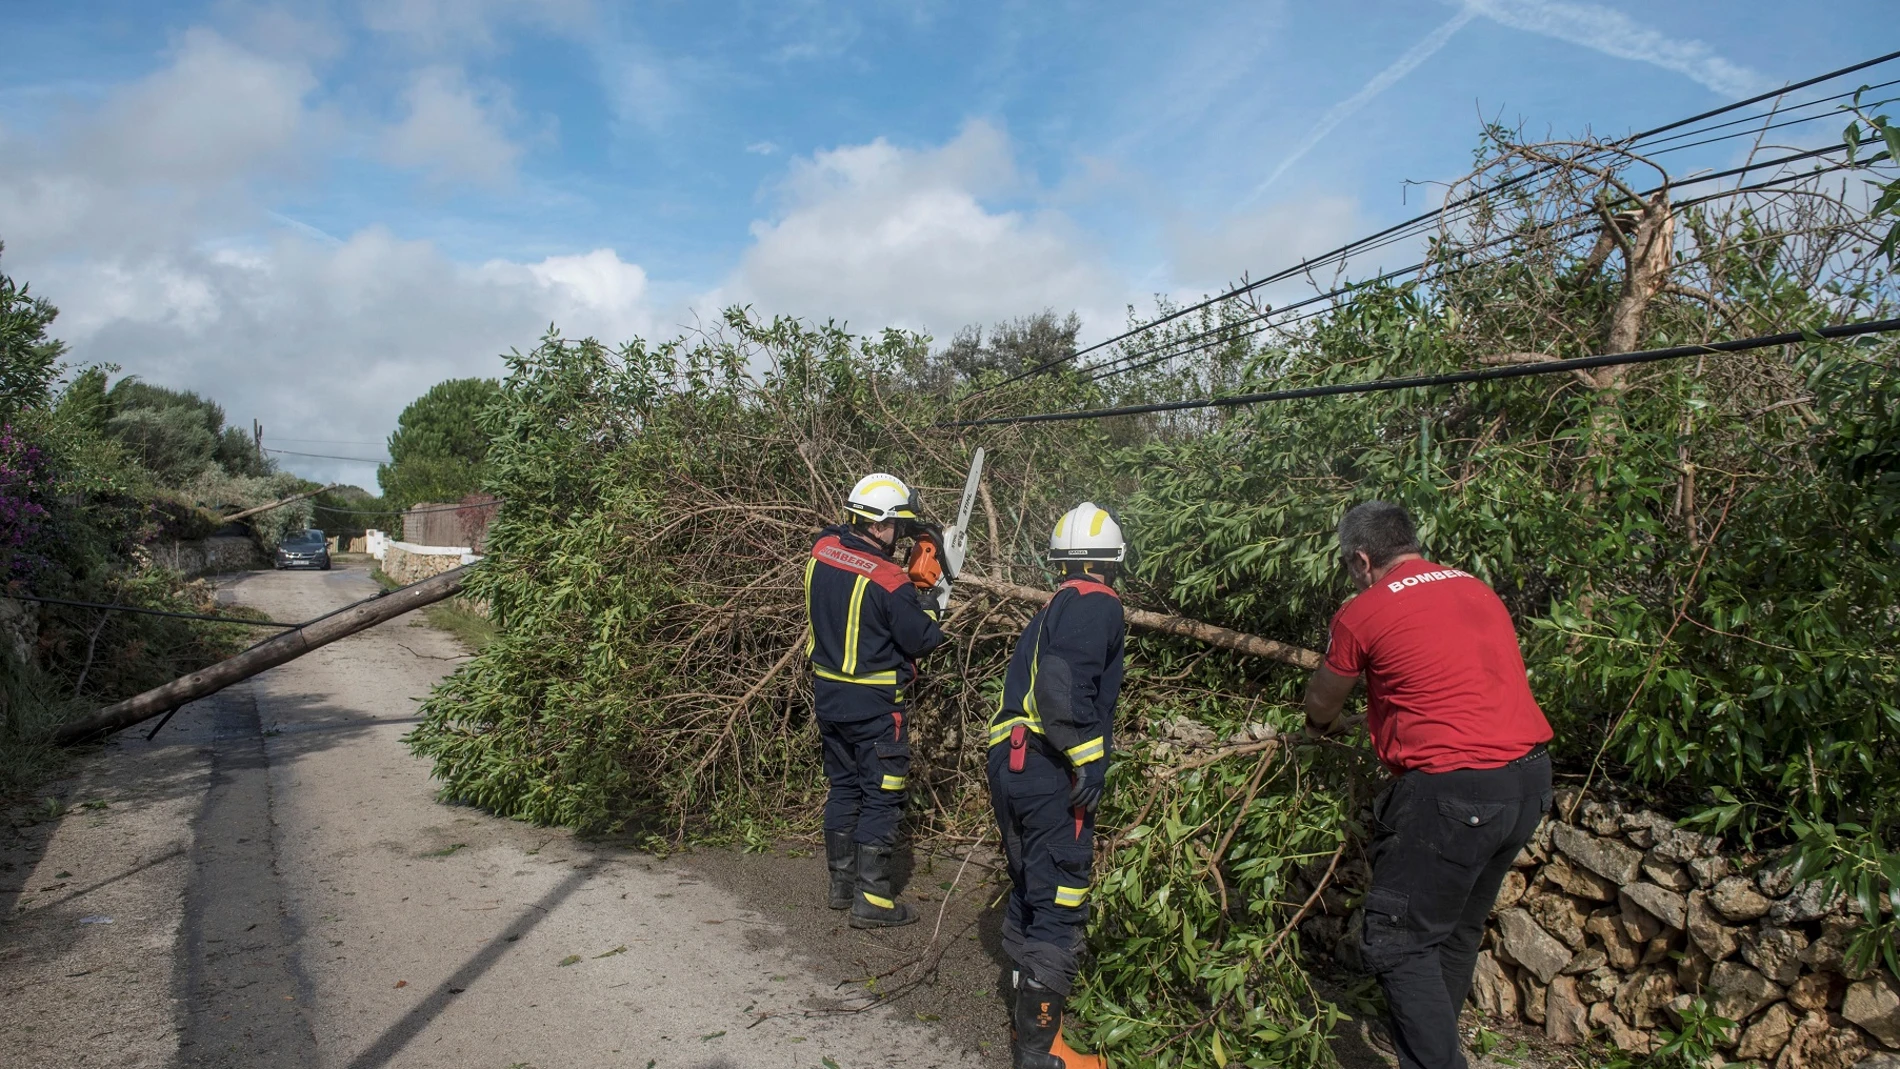 Efectivos del cuerpo de bomberos retiran un árbol caído en la zona de la urbanización La Argentina